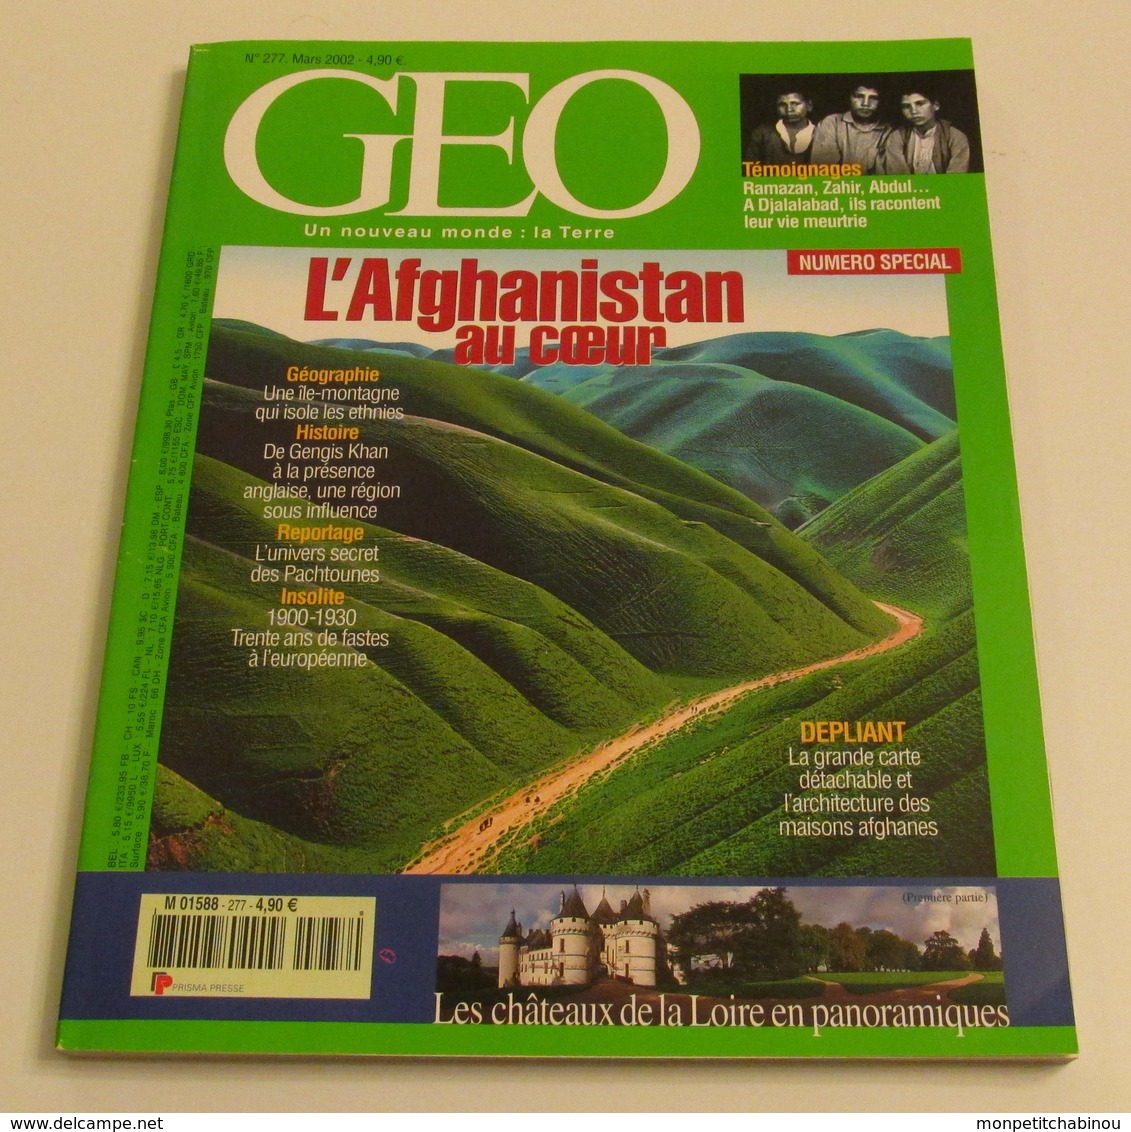 GEO N°277 (03/2002) : L'Afghanistan Au Coeur - Géographie